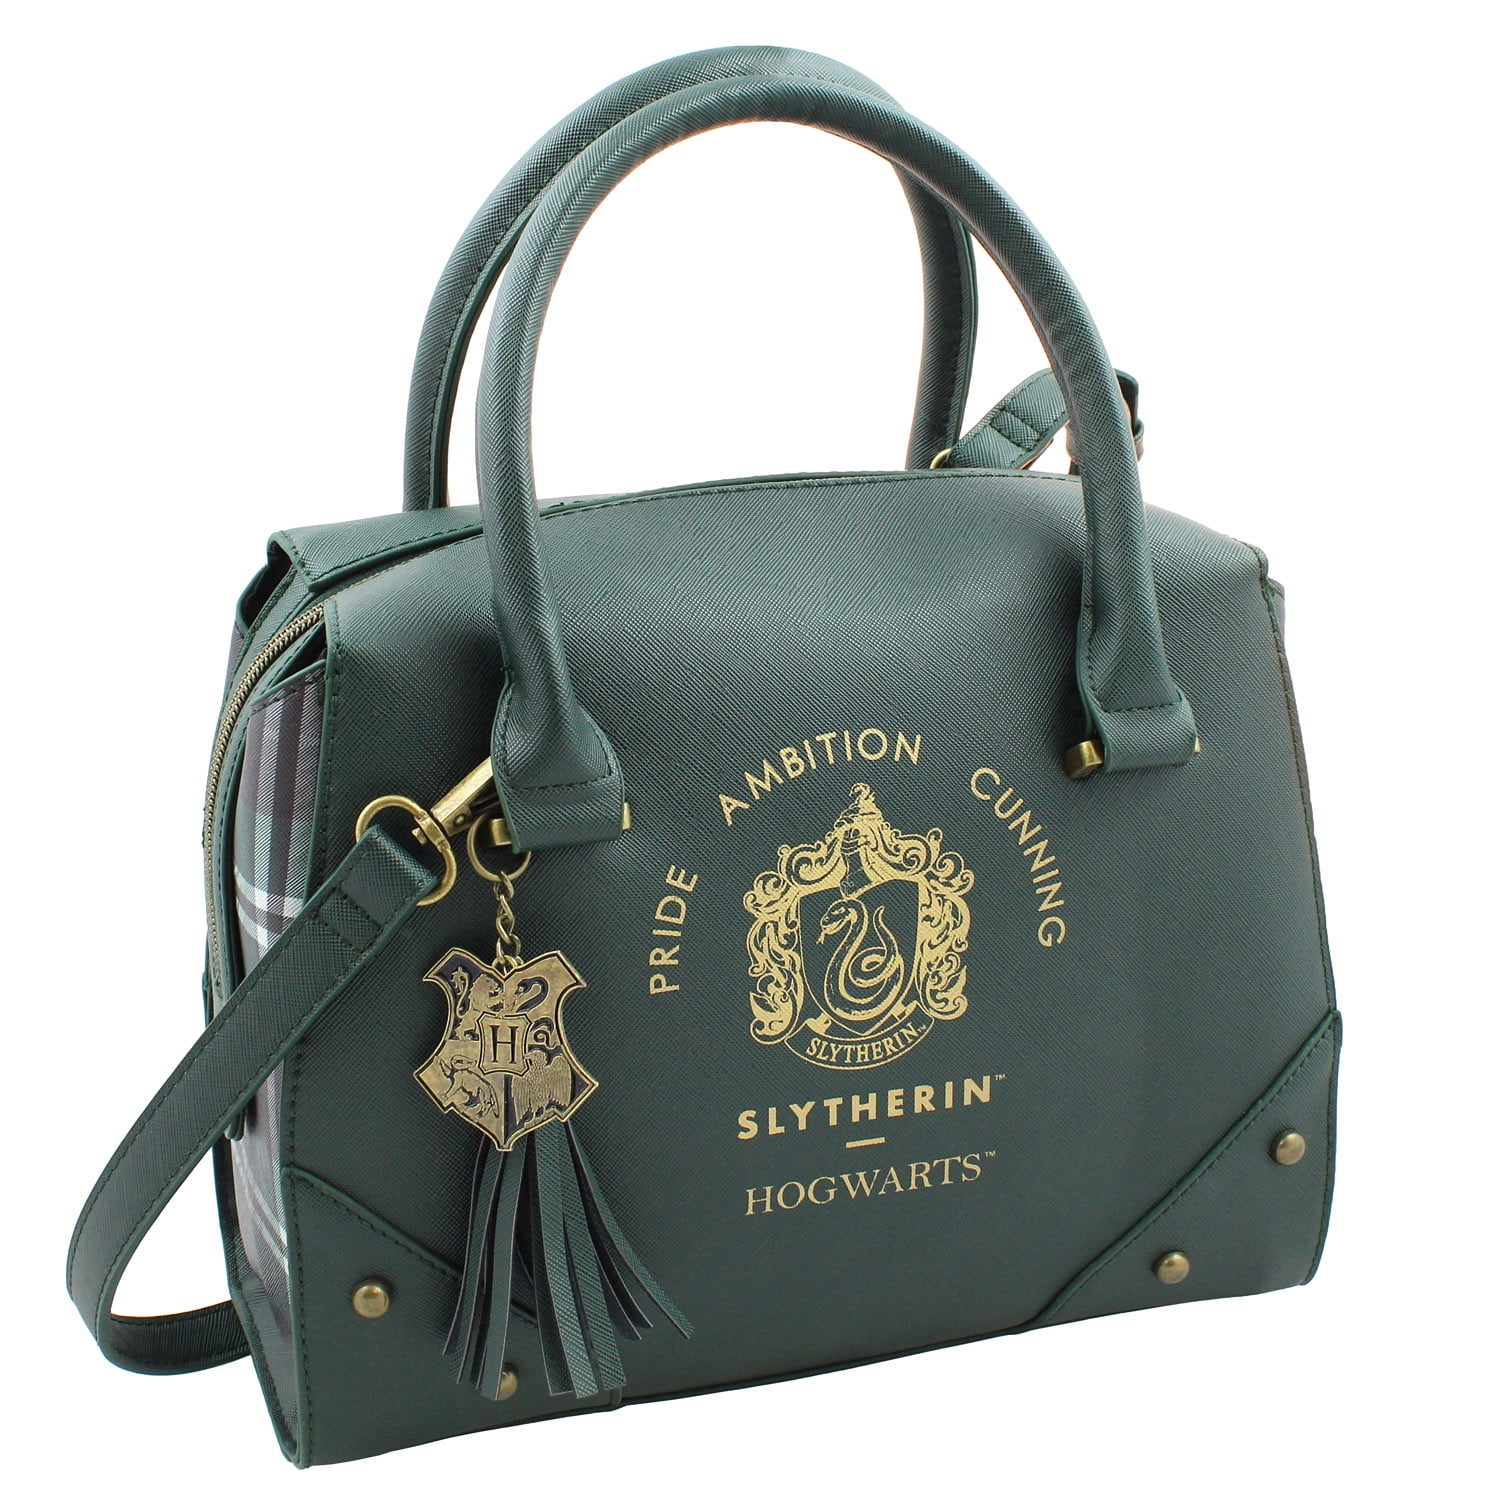 Harry Potter Purse Handbag Ravenclaw House Womens Shoulder Satchel Bag  Ravenlaw for sale online | eBay